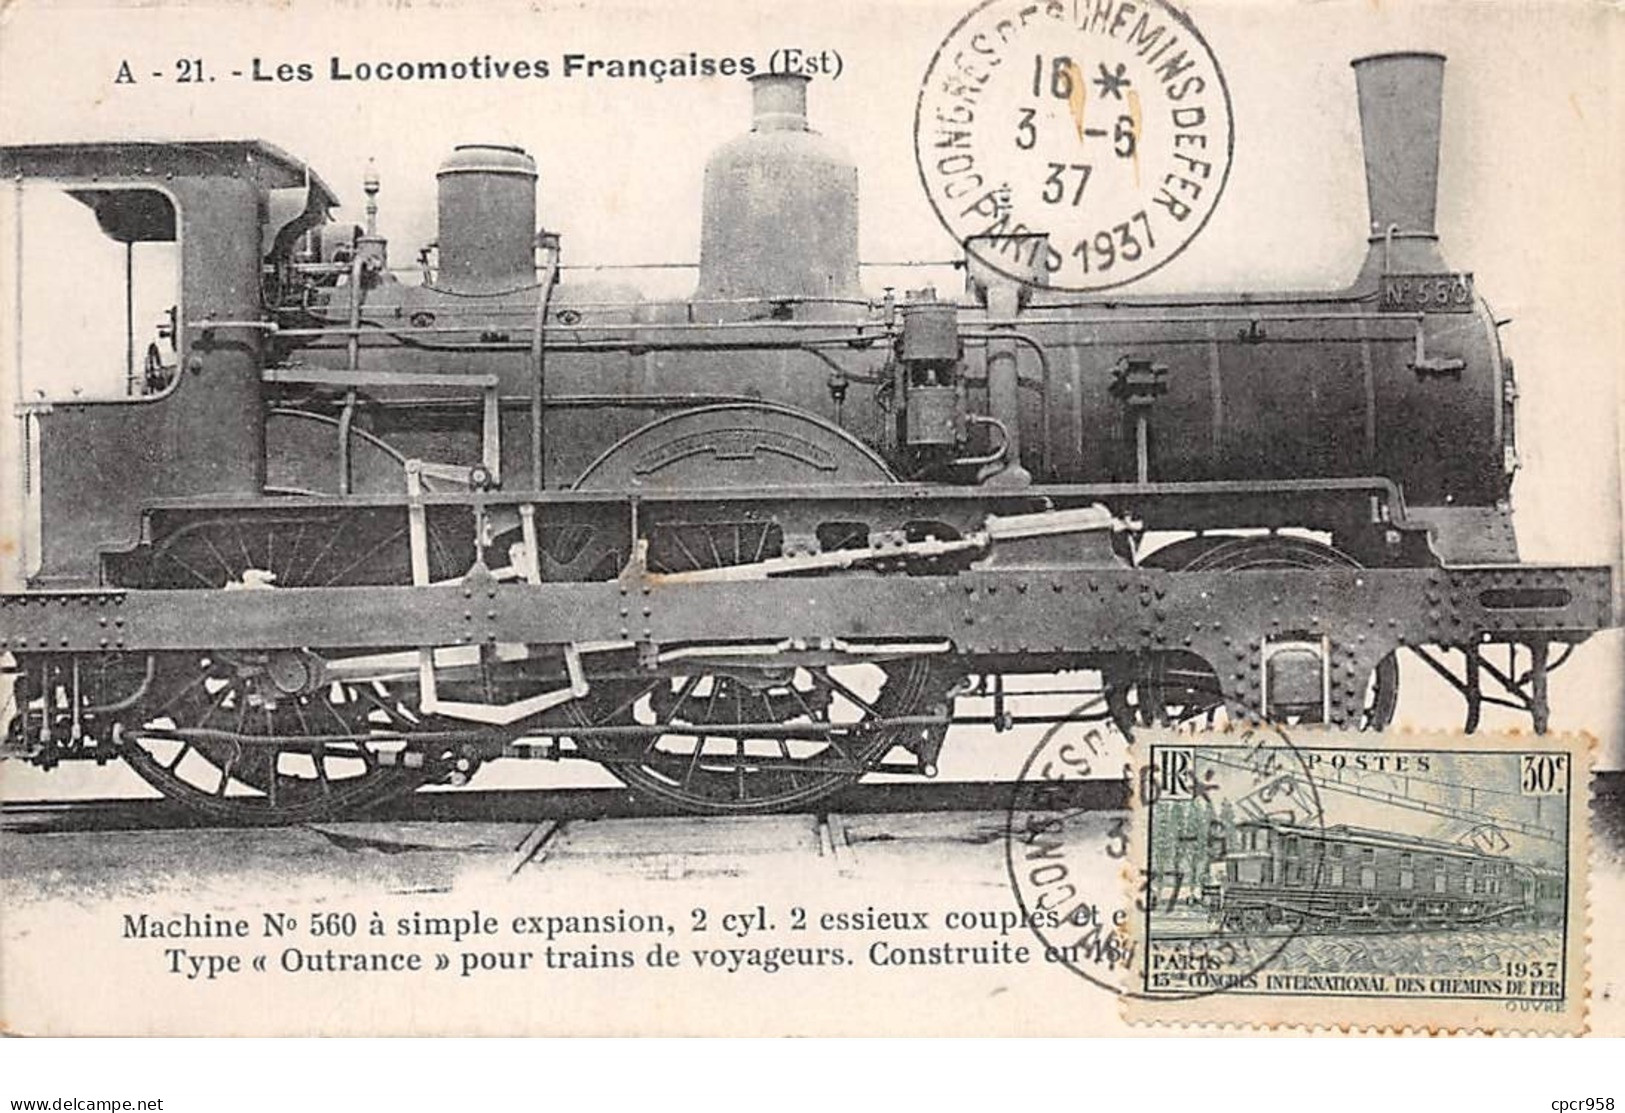 FRANCE .CARTE MAXIMUM. N°207855. 1937. Cachet PARIS. Chemin De Fer. Les Locomotives - 1930-1939